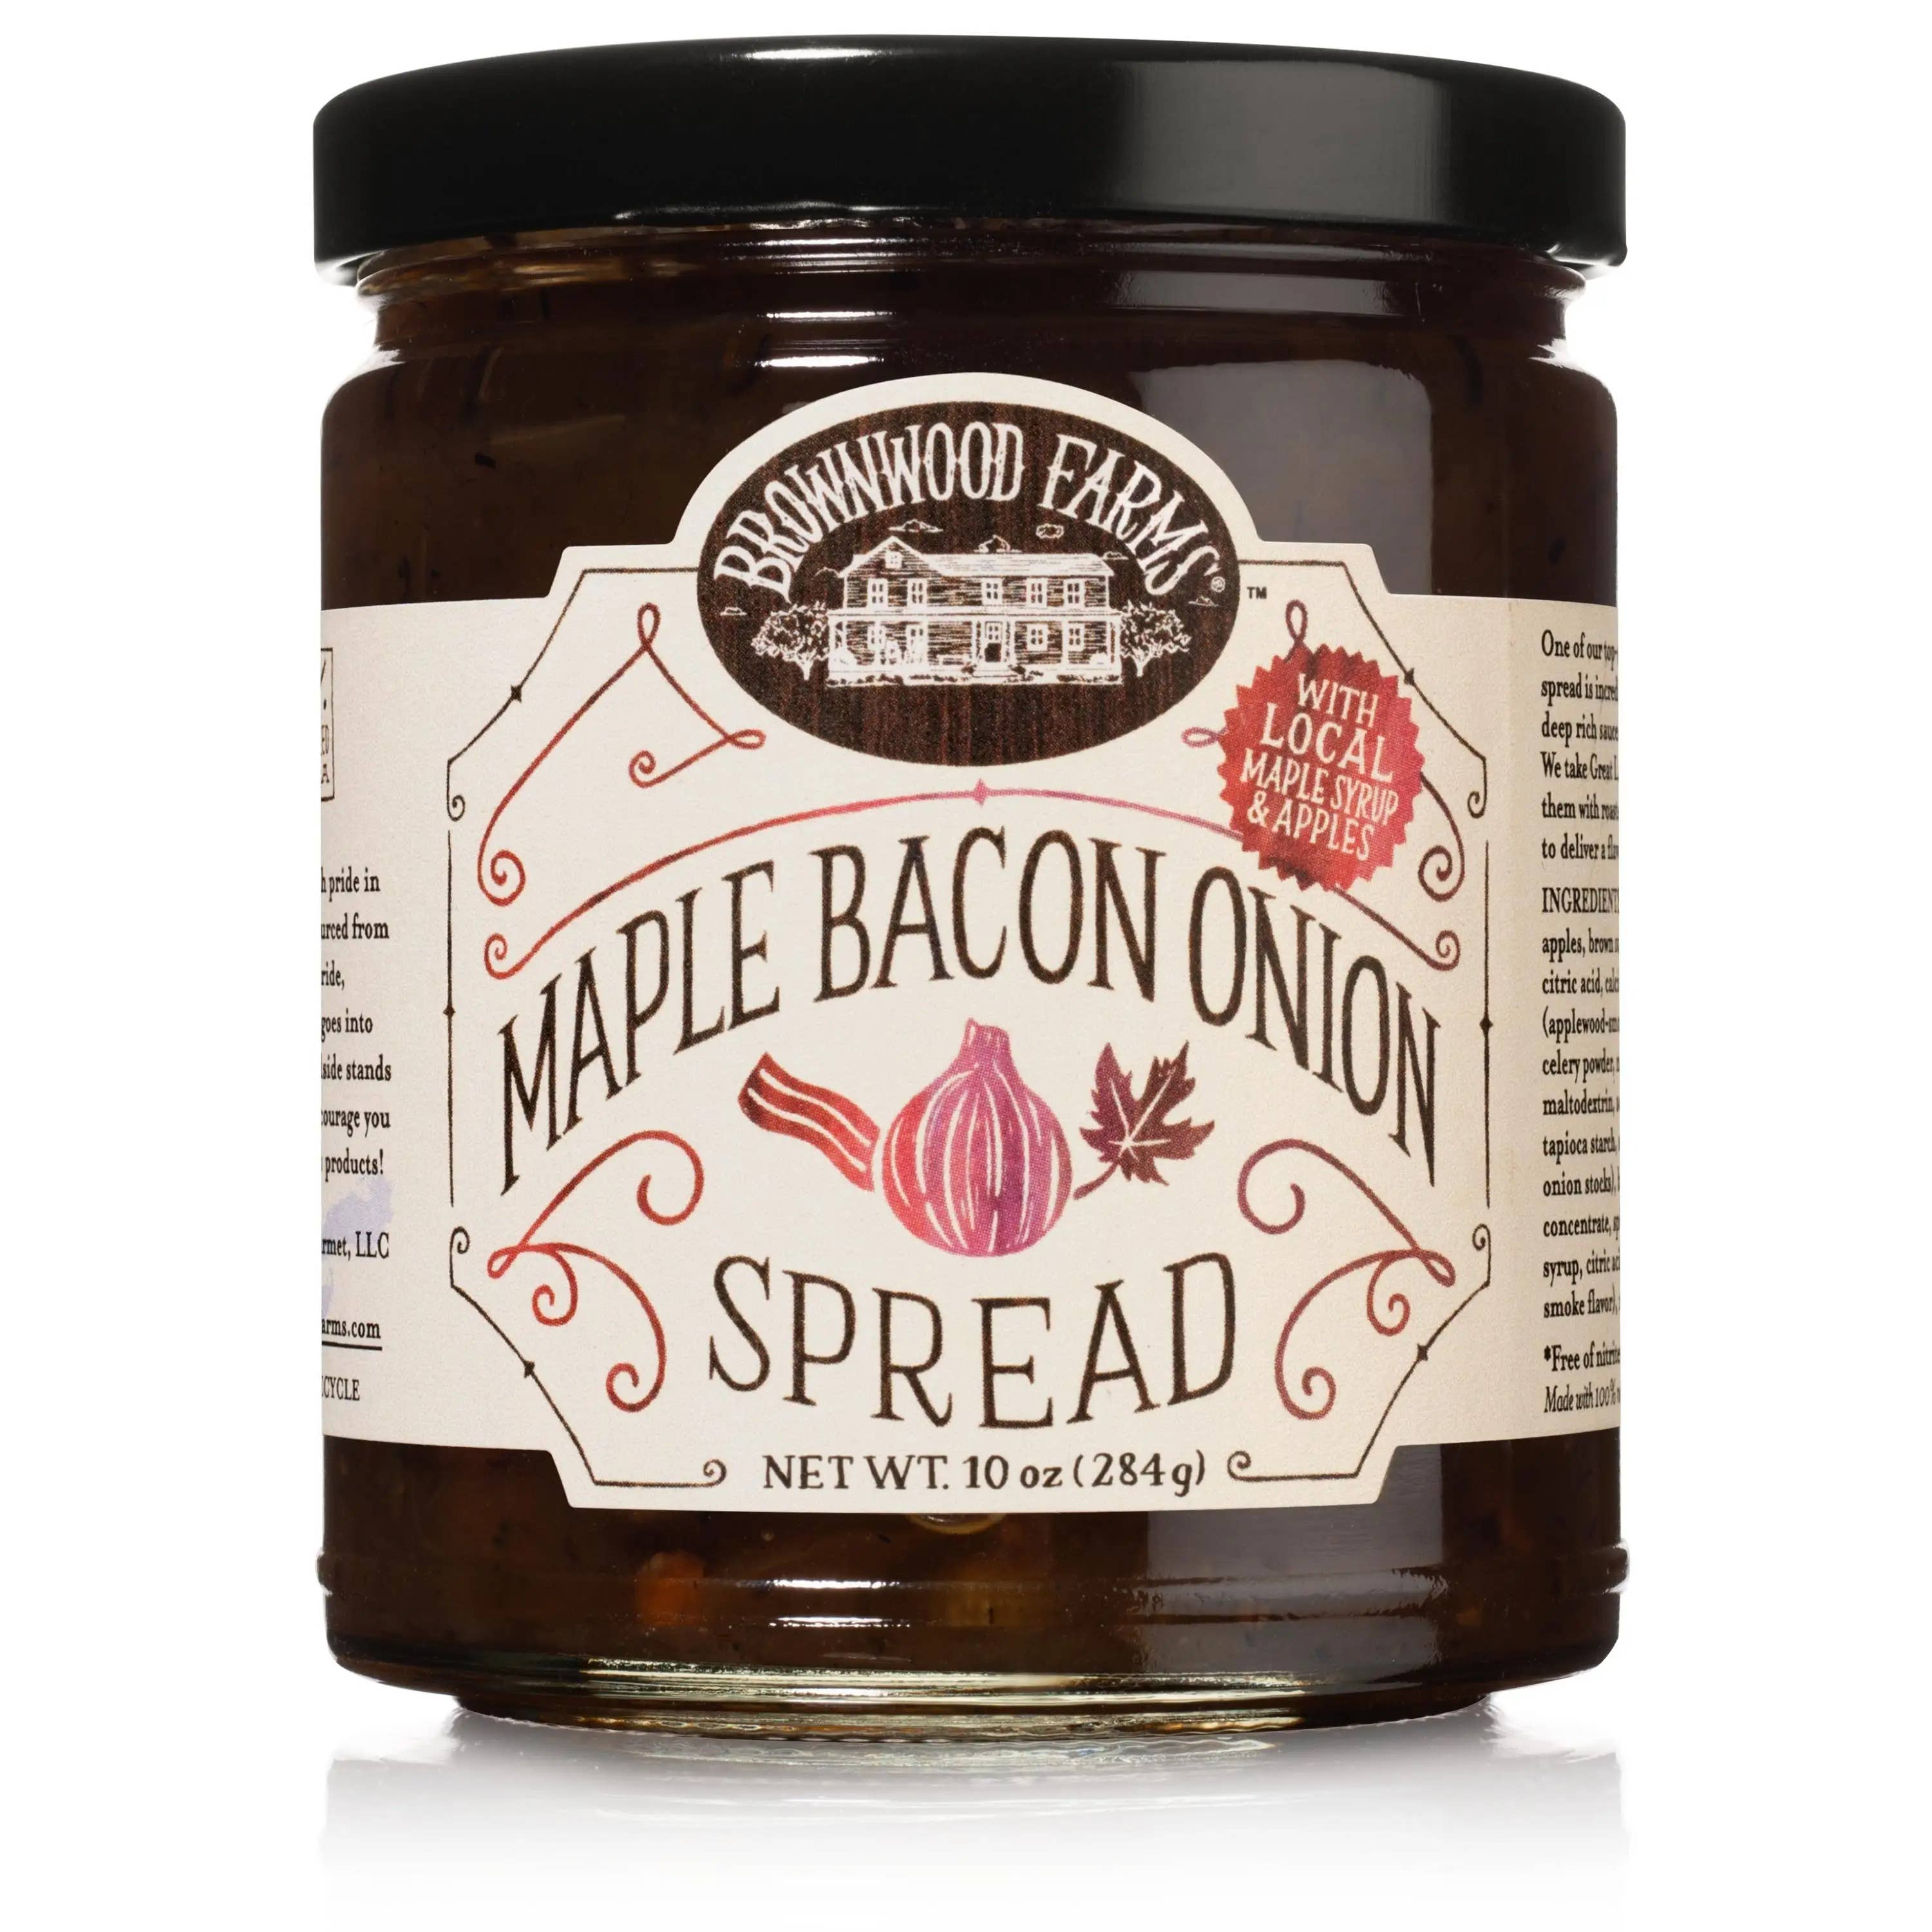 10 oz. Spread - Maple Bacon Onion Spread